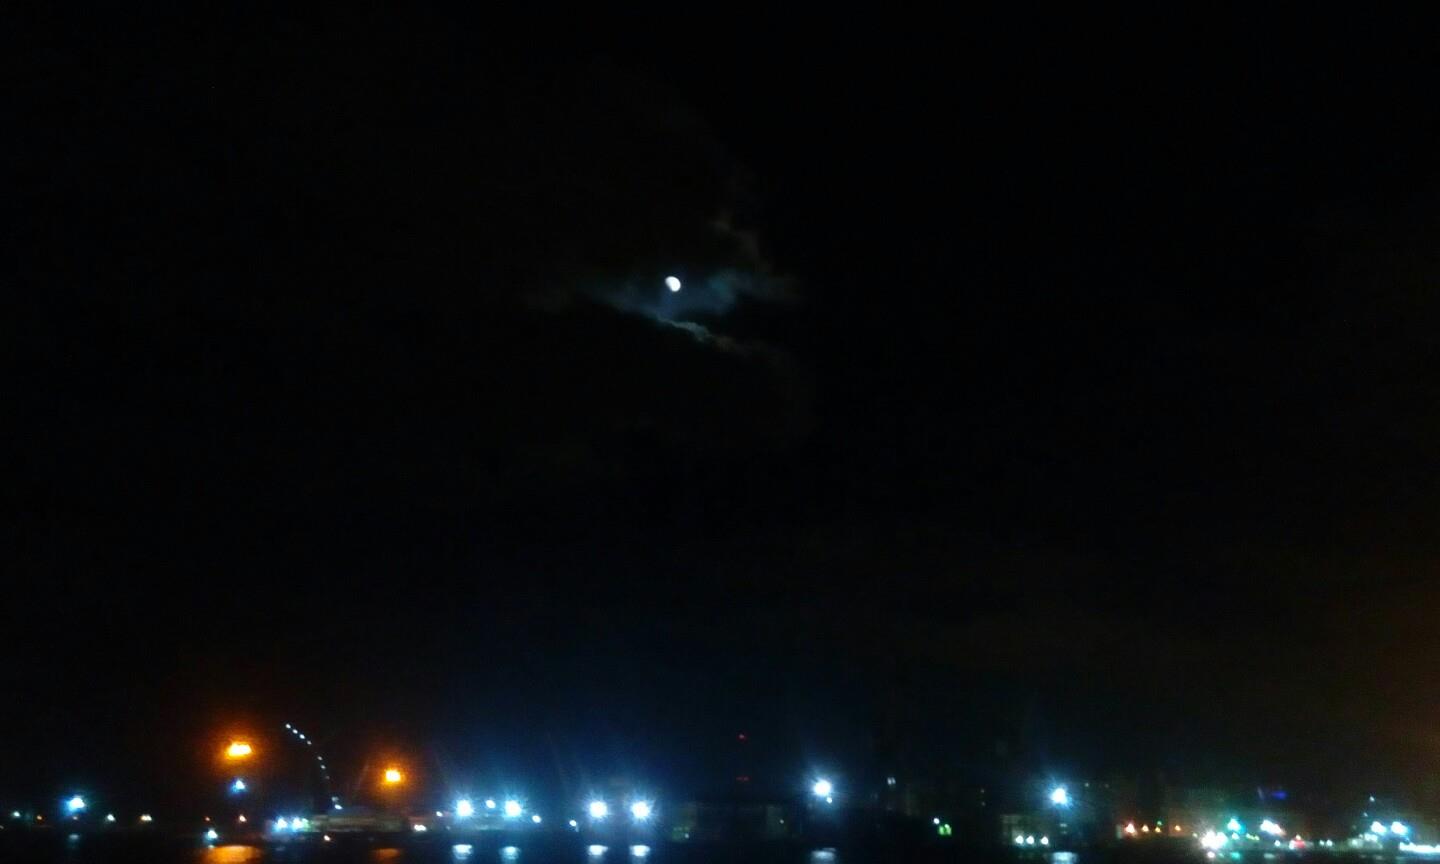 بدء الخسوف الجزئي للقمر في بورسعيد                                                                                                                                                                      